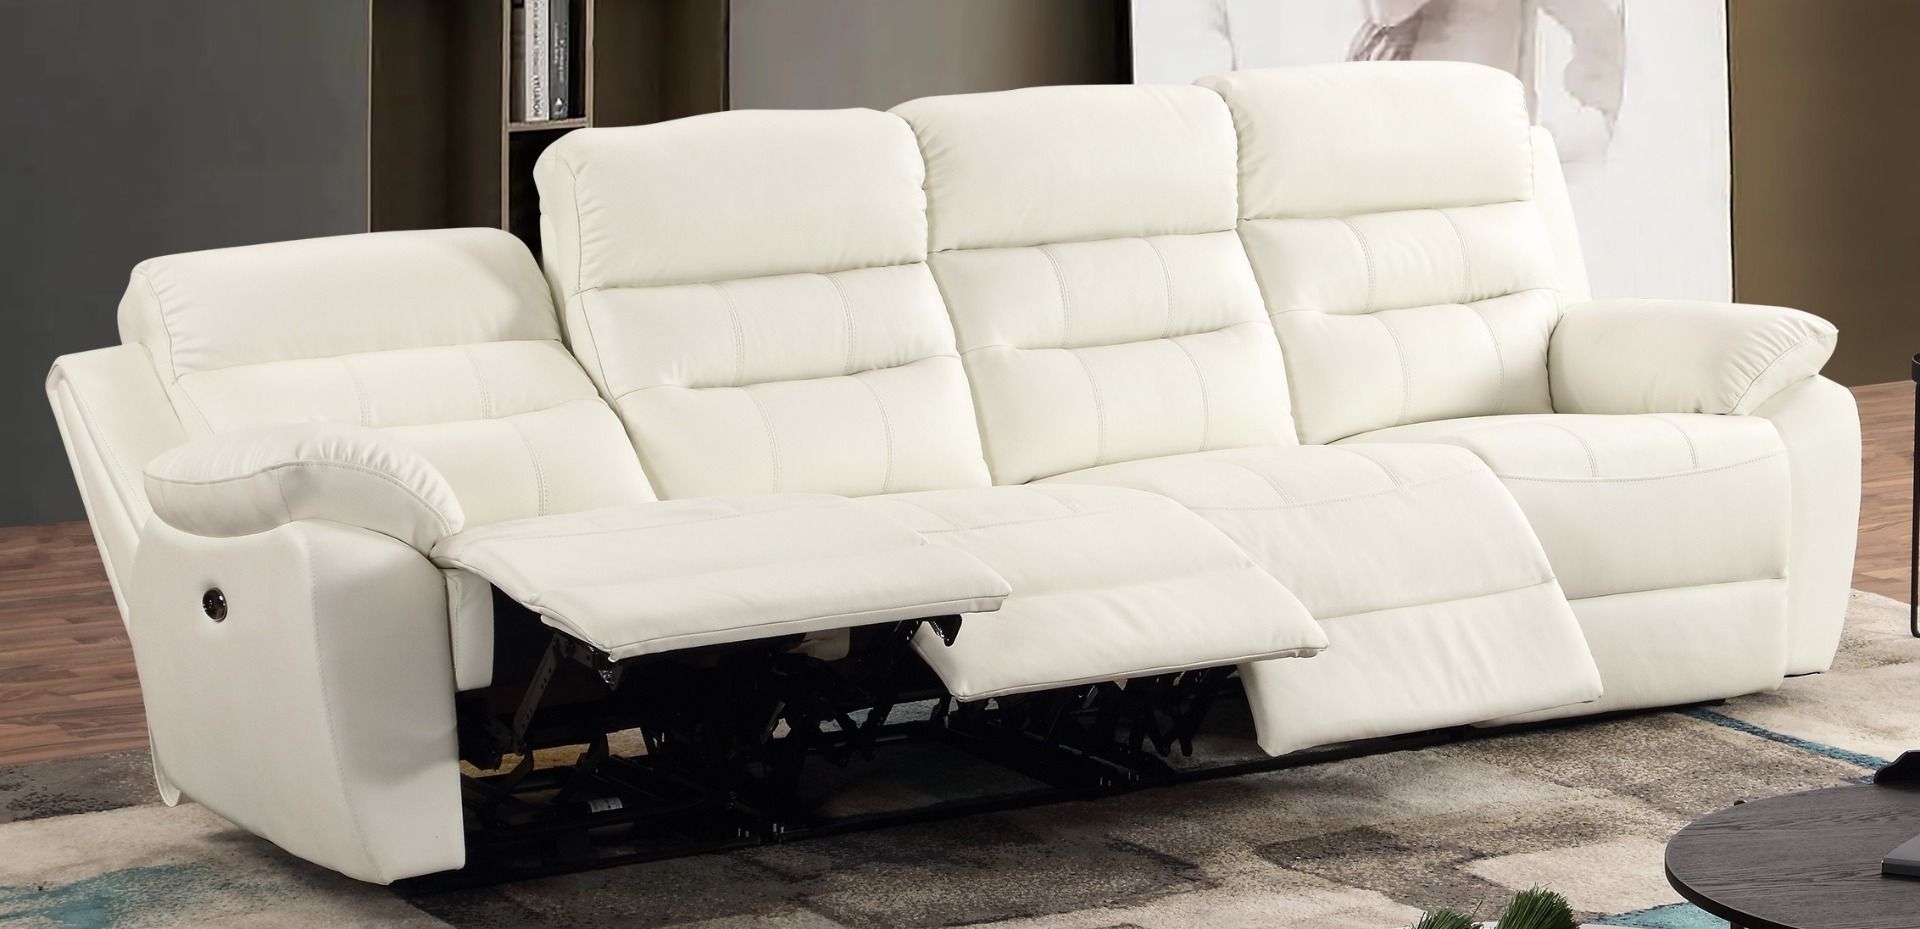 Mapo Möbel 4-Sitzer Fernsehsofa mit Liegefunktion und elektrischer Verstellung,weiß